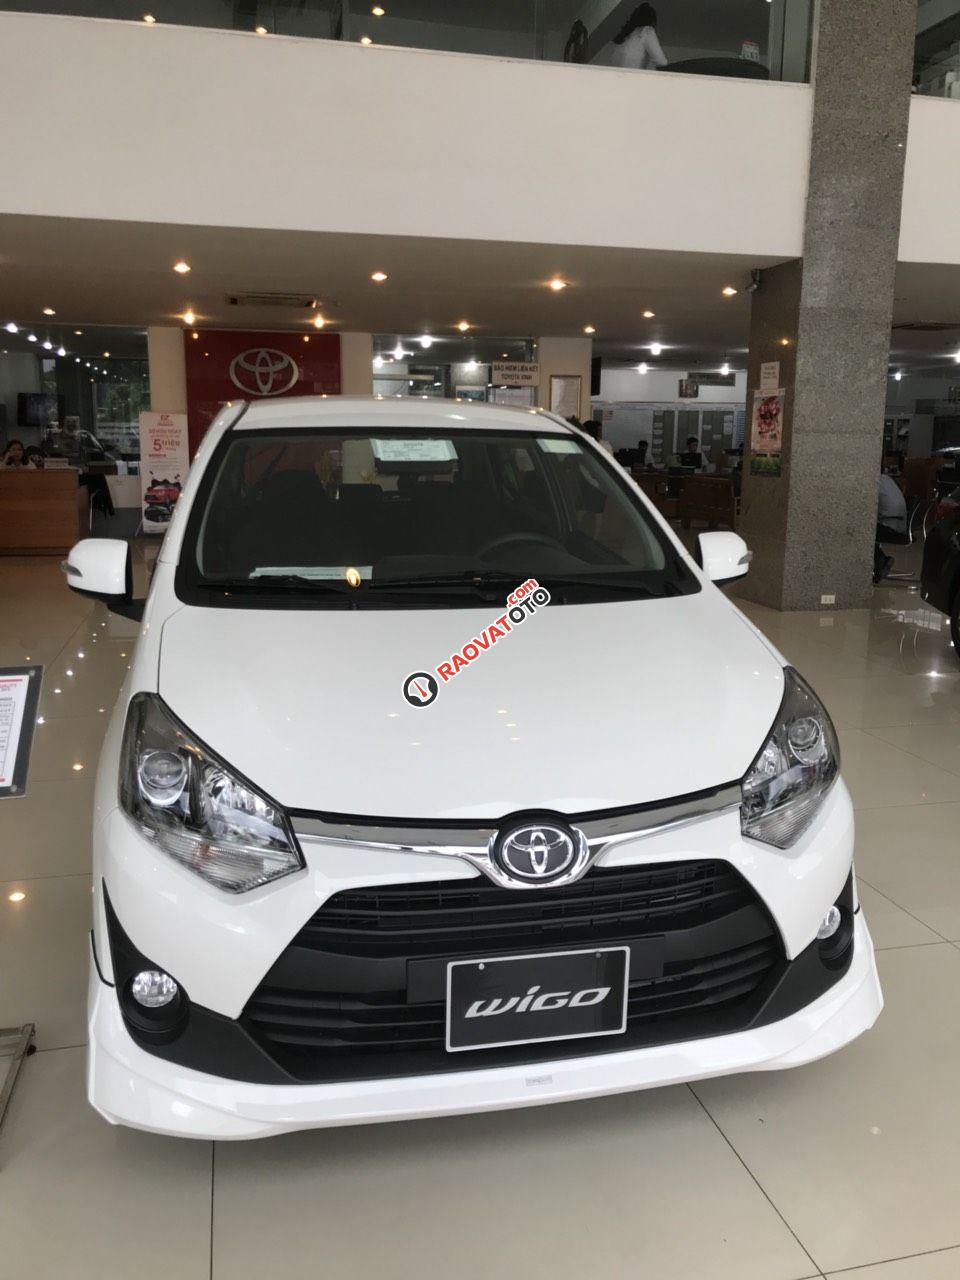 Toyota Vinh-Nghệ An-Hotline: 0904.72.52.66 bán xe Wigo tự động giá rẻ nhất Nghệ An, trả góp lãi suất từ 0%-6